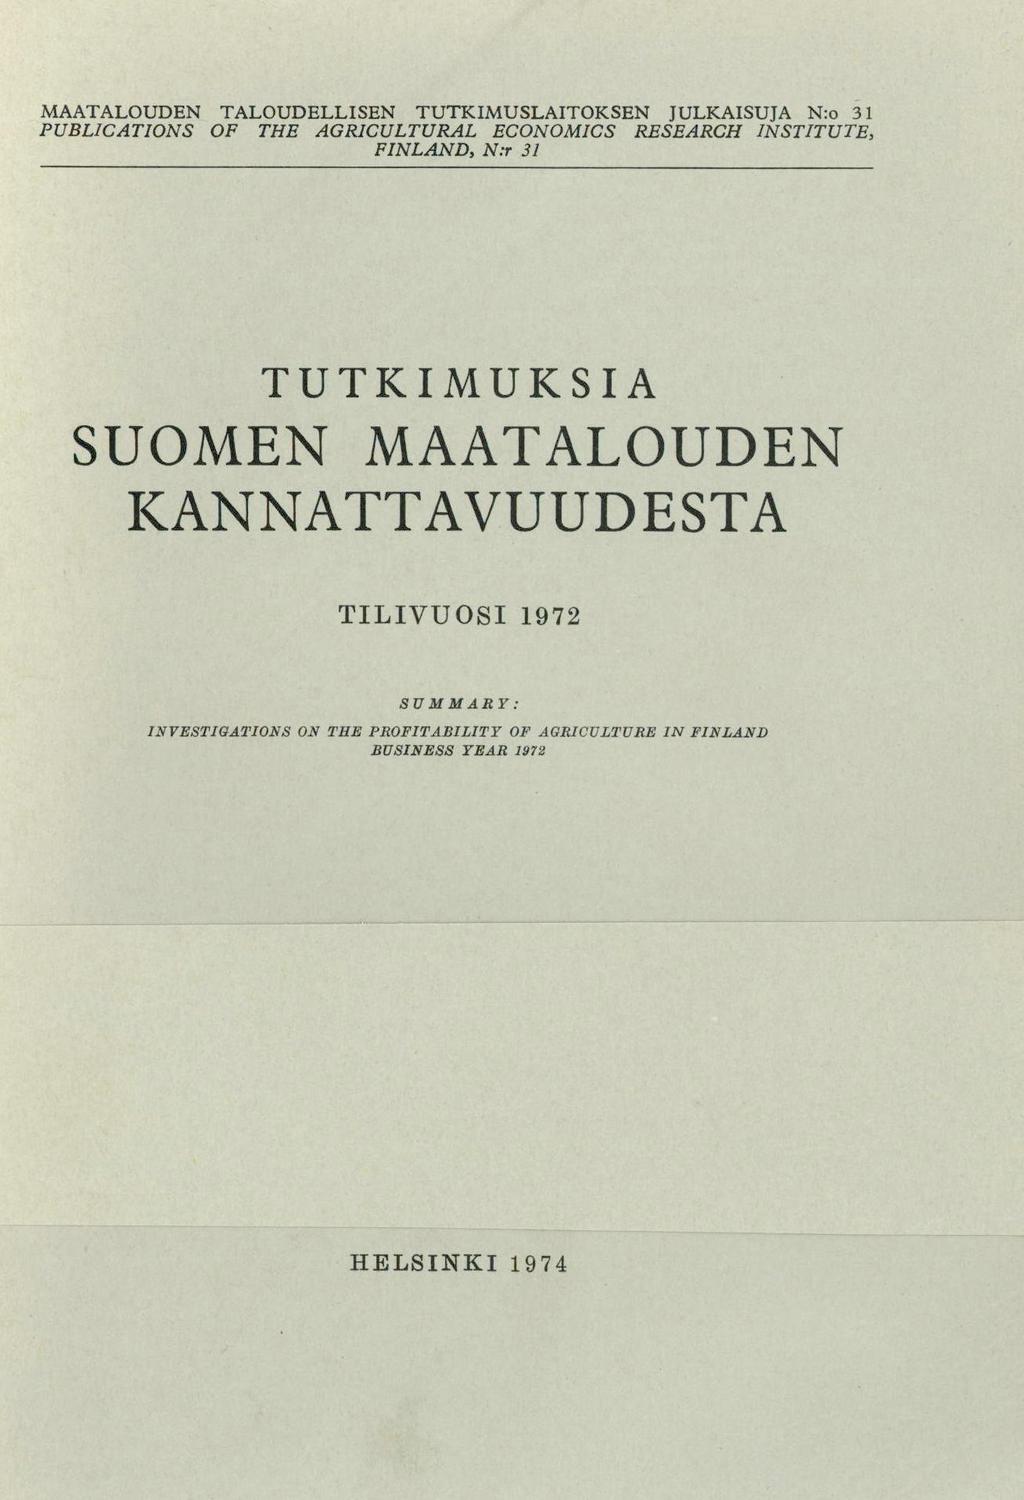 MAATALOUDEN TALOUDELLISEN TUTKIMUSLAITOKSEN JULKAISUJA N:o 31 PUBLICATIONS OF THE AGRICULTURAL ECONOMICS RESEARCH INSTITUTE, FINLAND, N:r 31 TUTKIMUKSIA